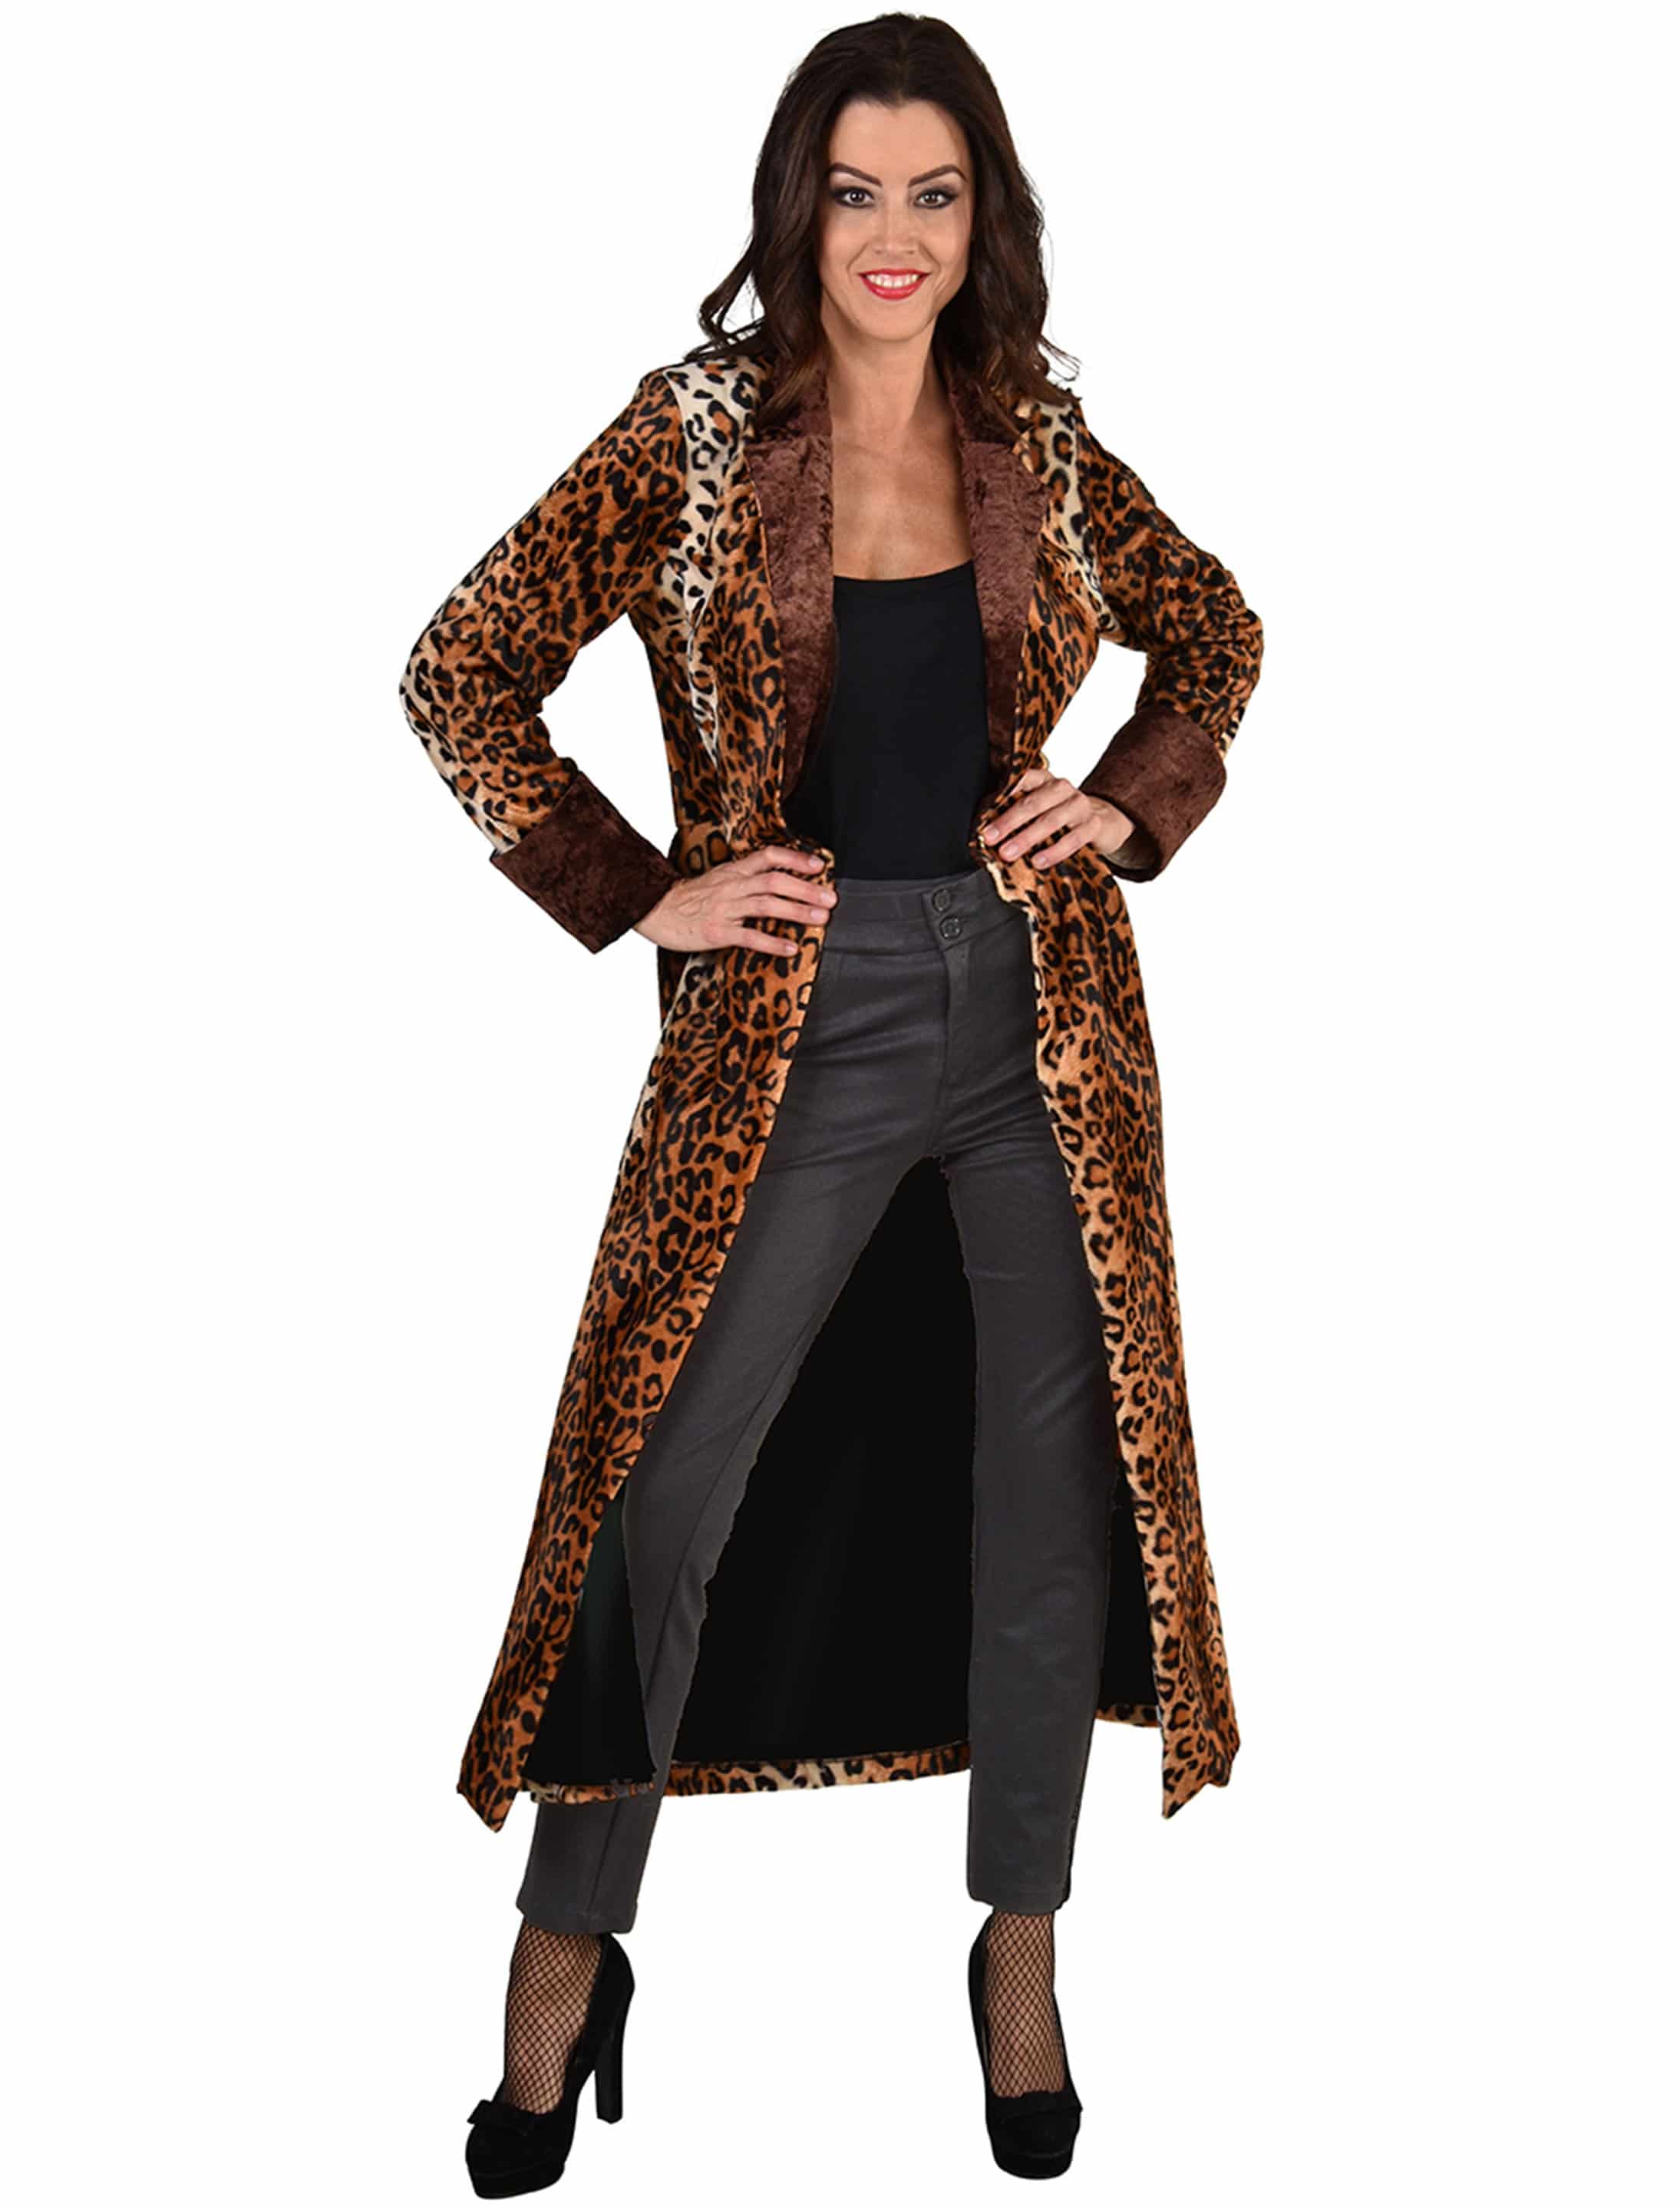 Mantel Leopard Damen schwarz/braun S/M